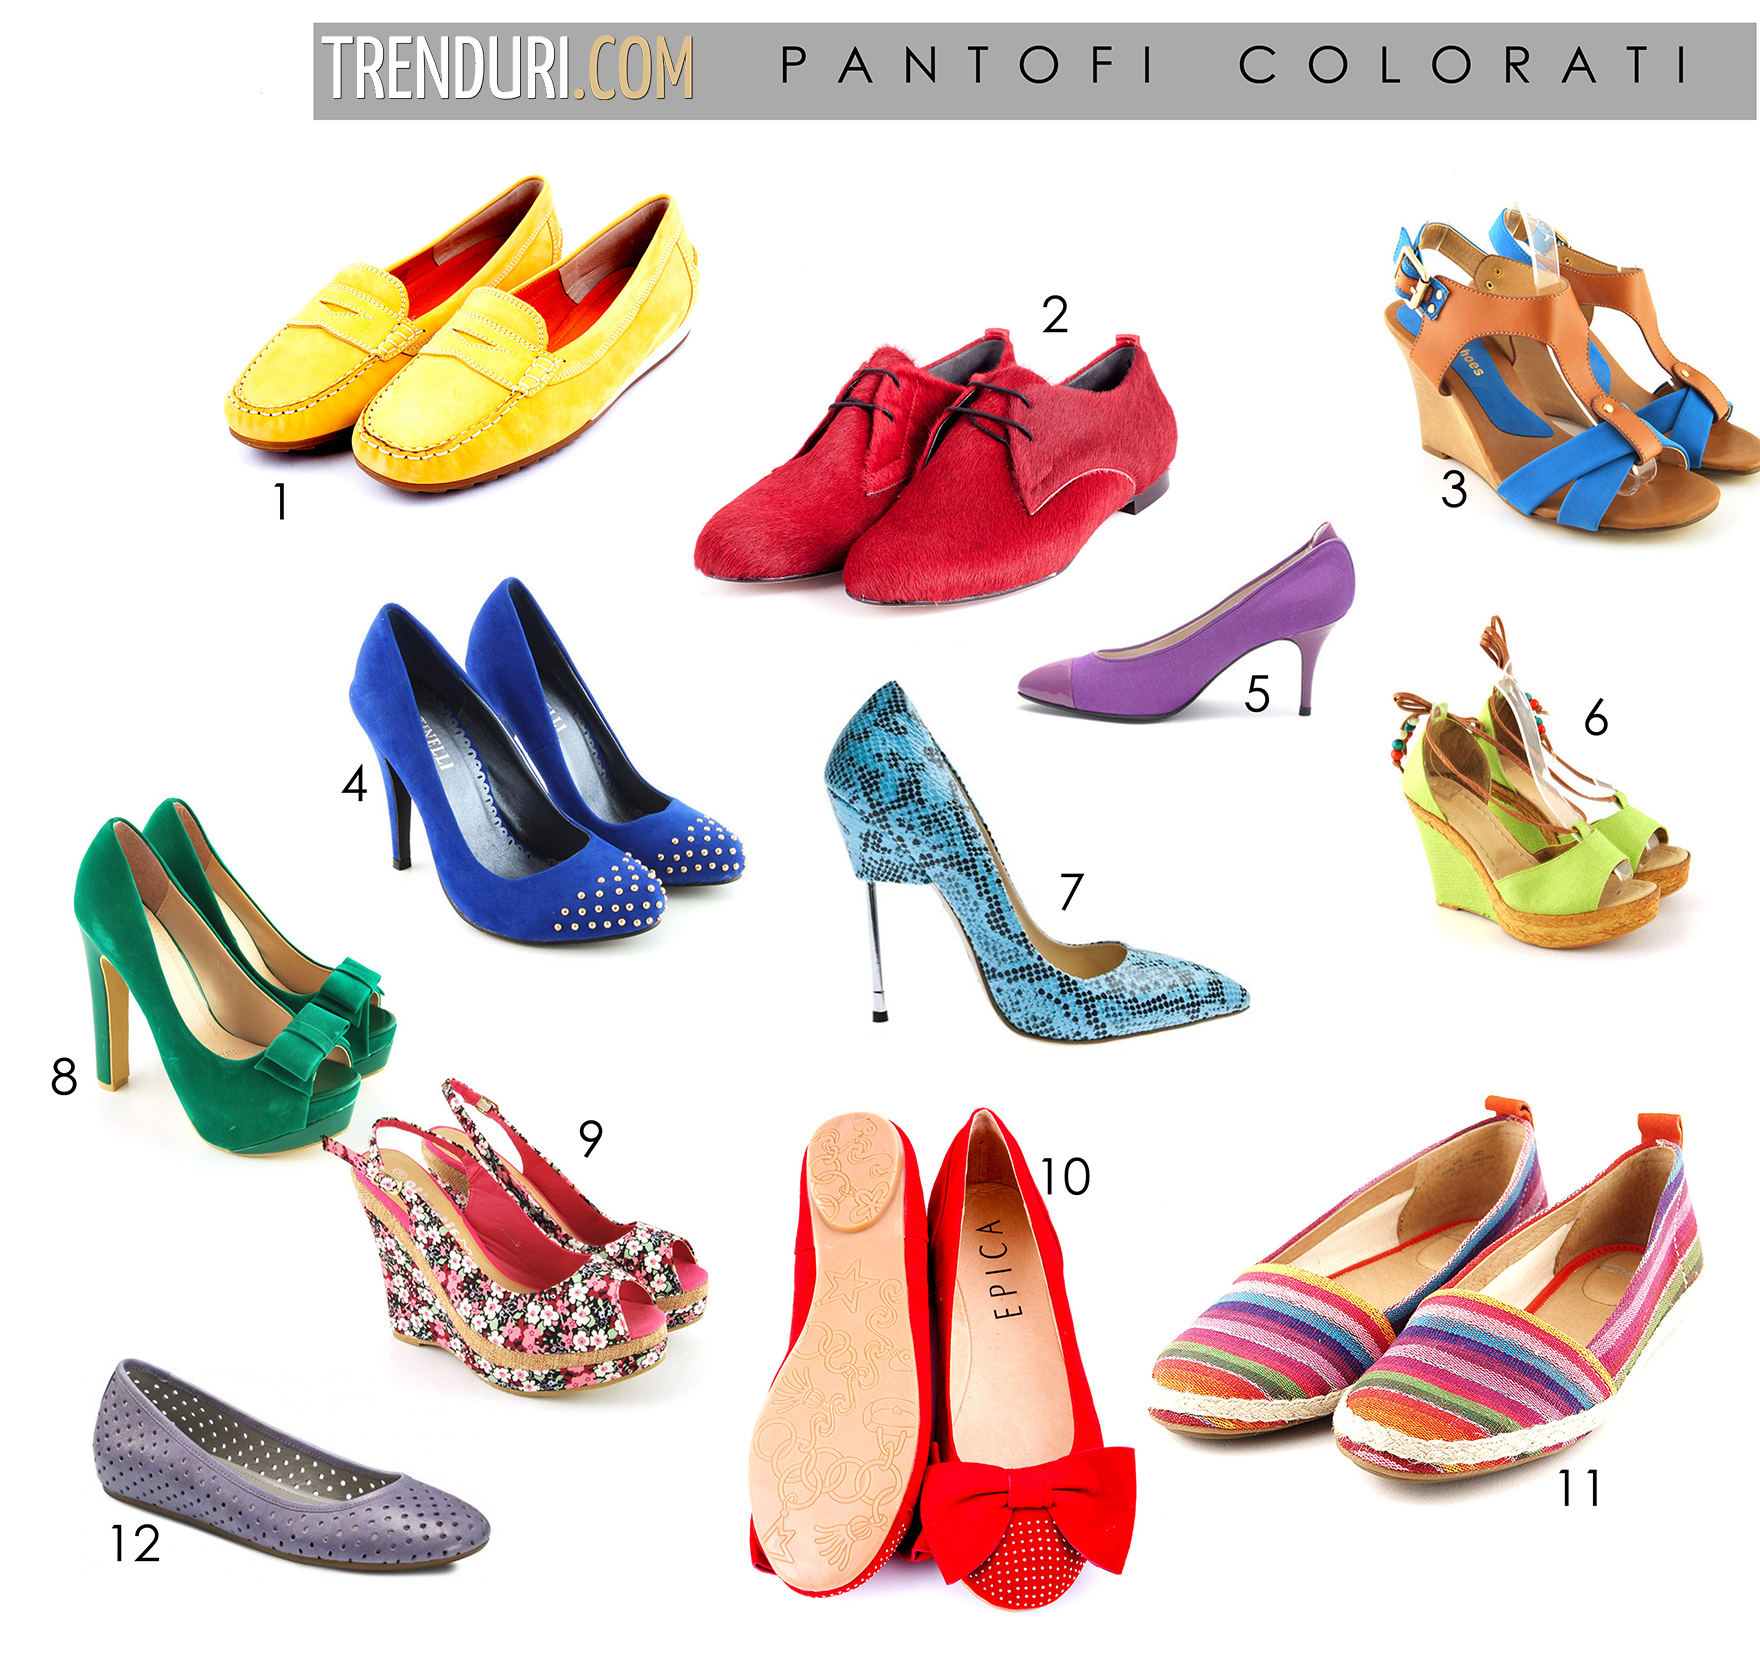 pantofi colorati - moda de primavara vara 2013